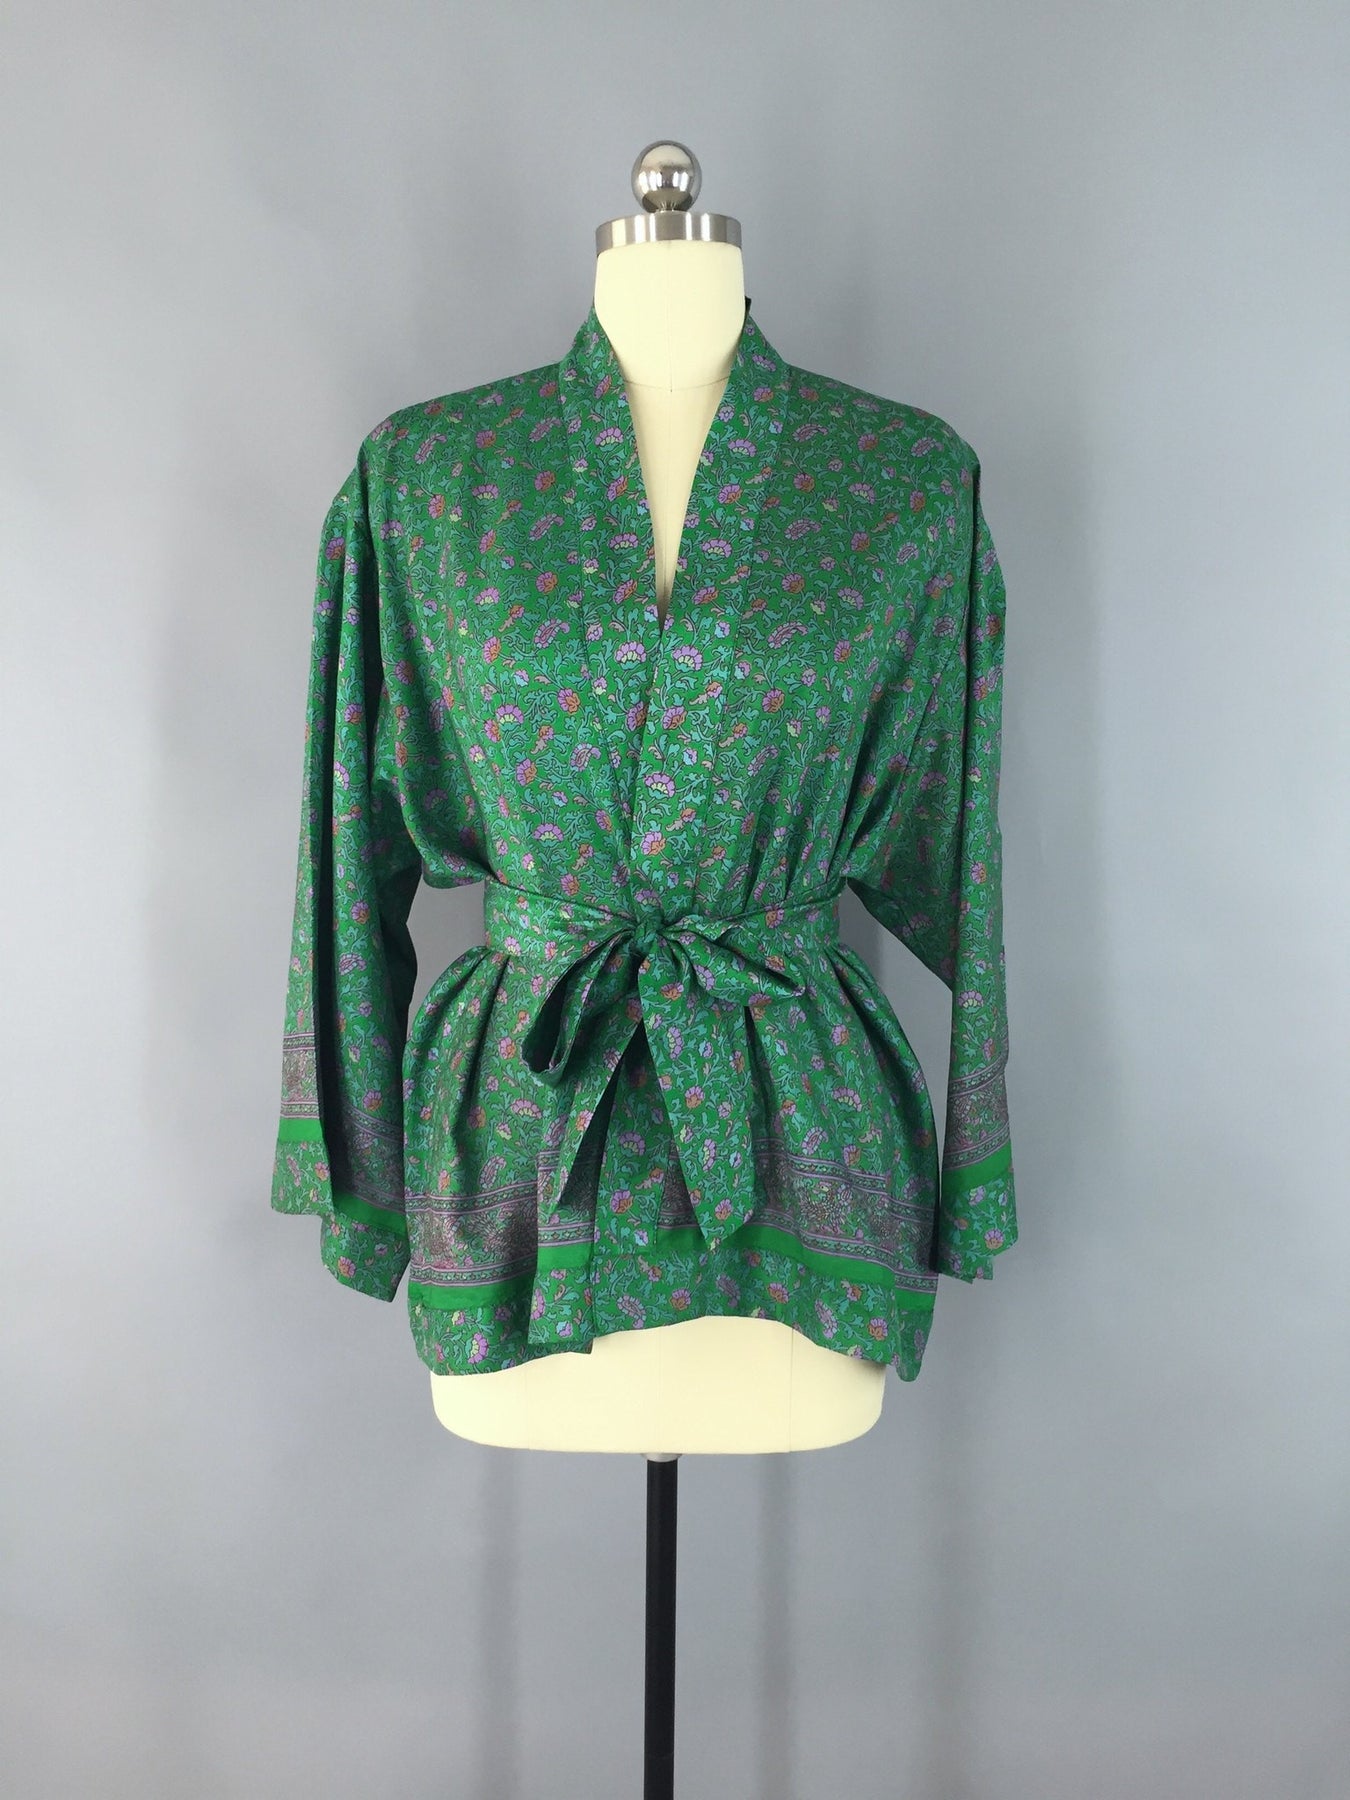 Kimono Jacket / Vintage Indian Sari / Green Floral Print – ThisBlueBird